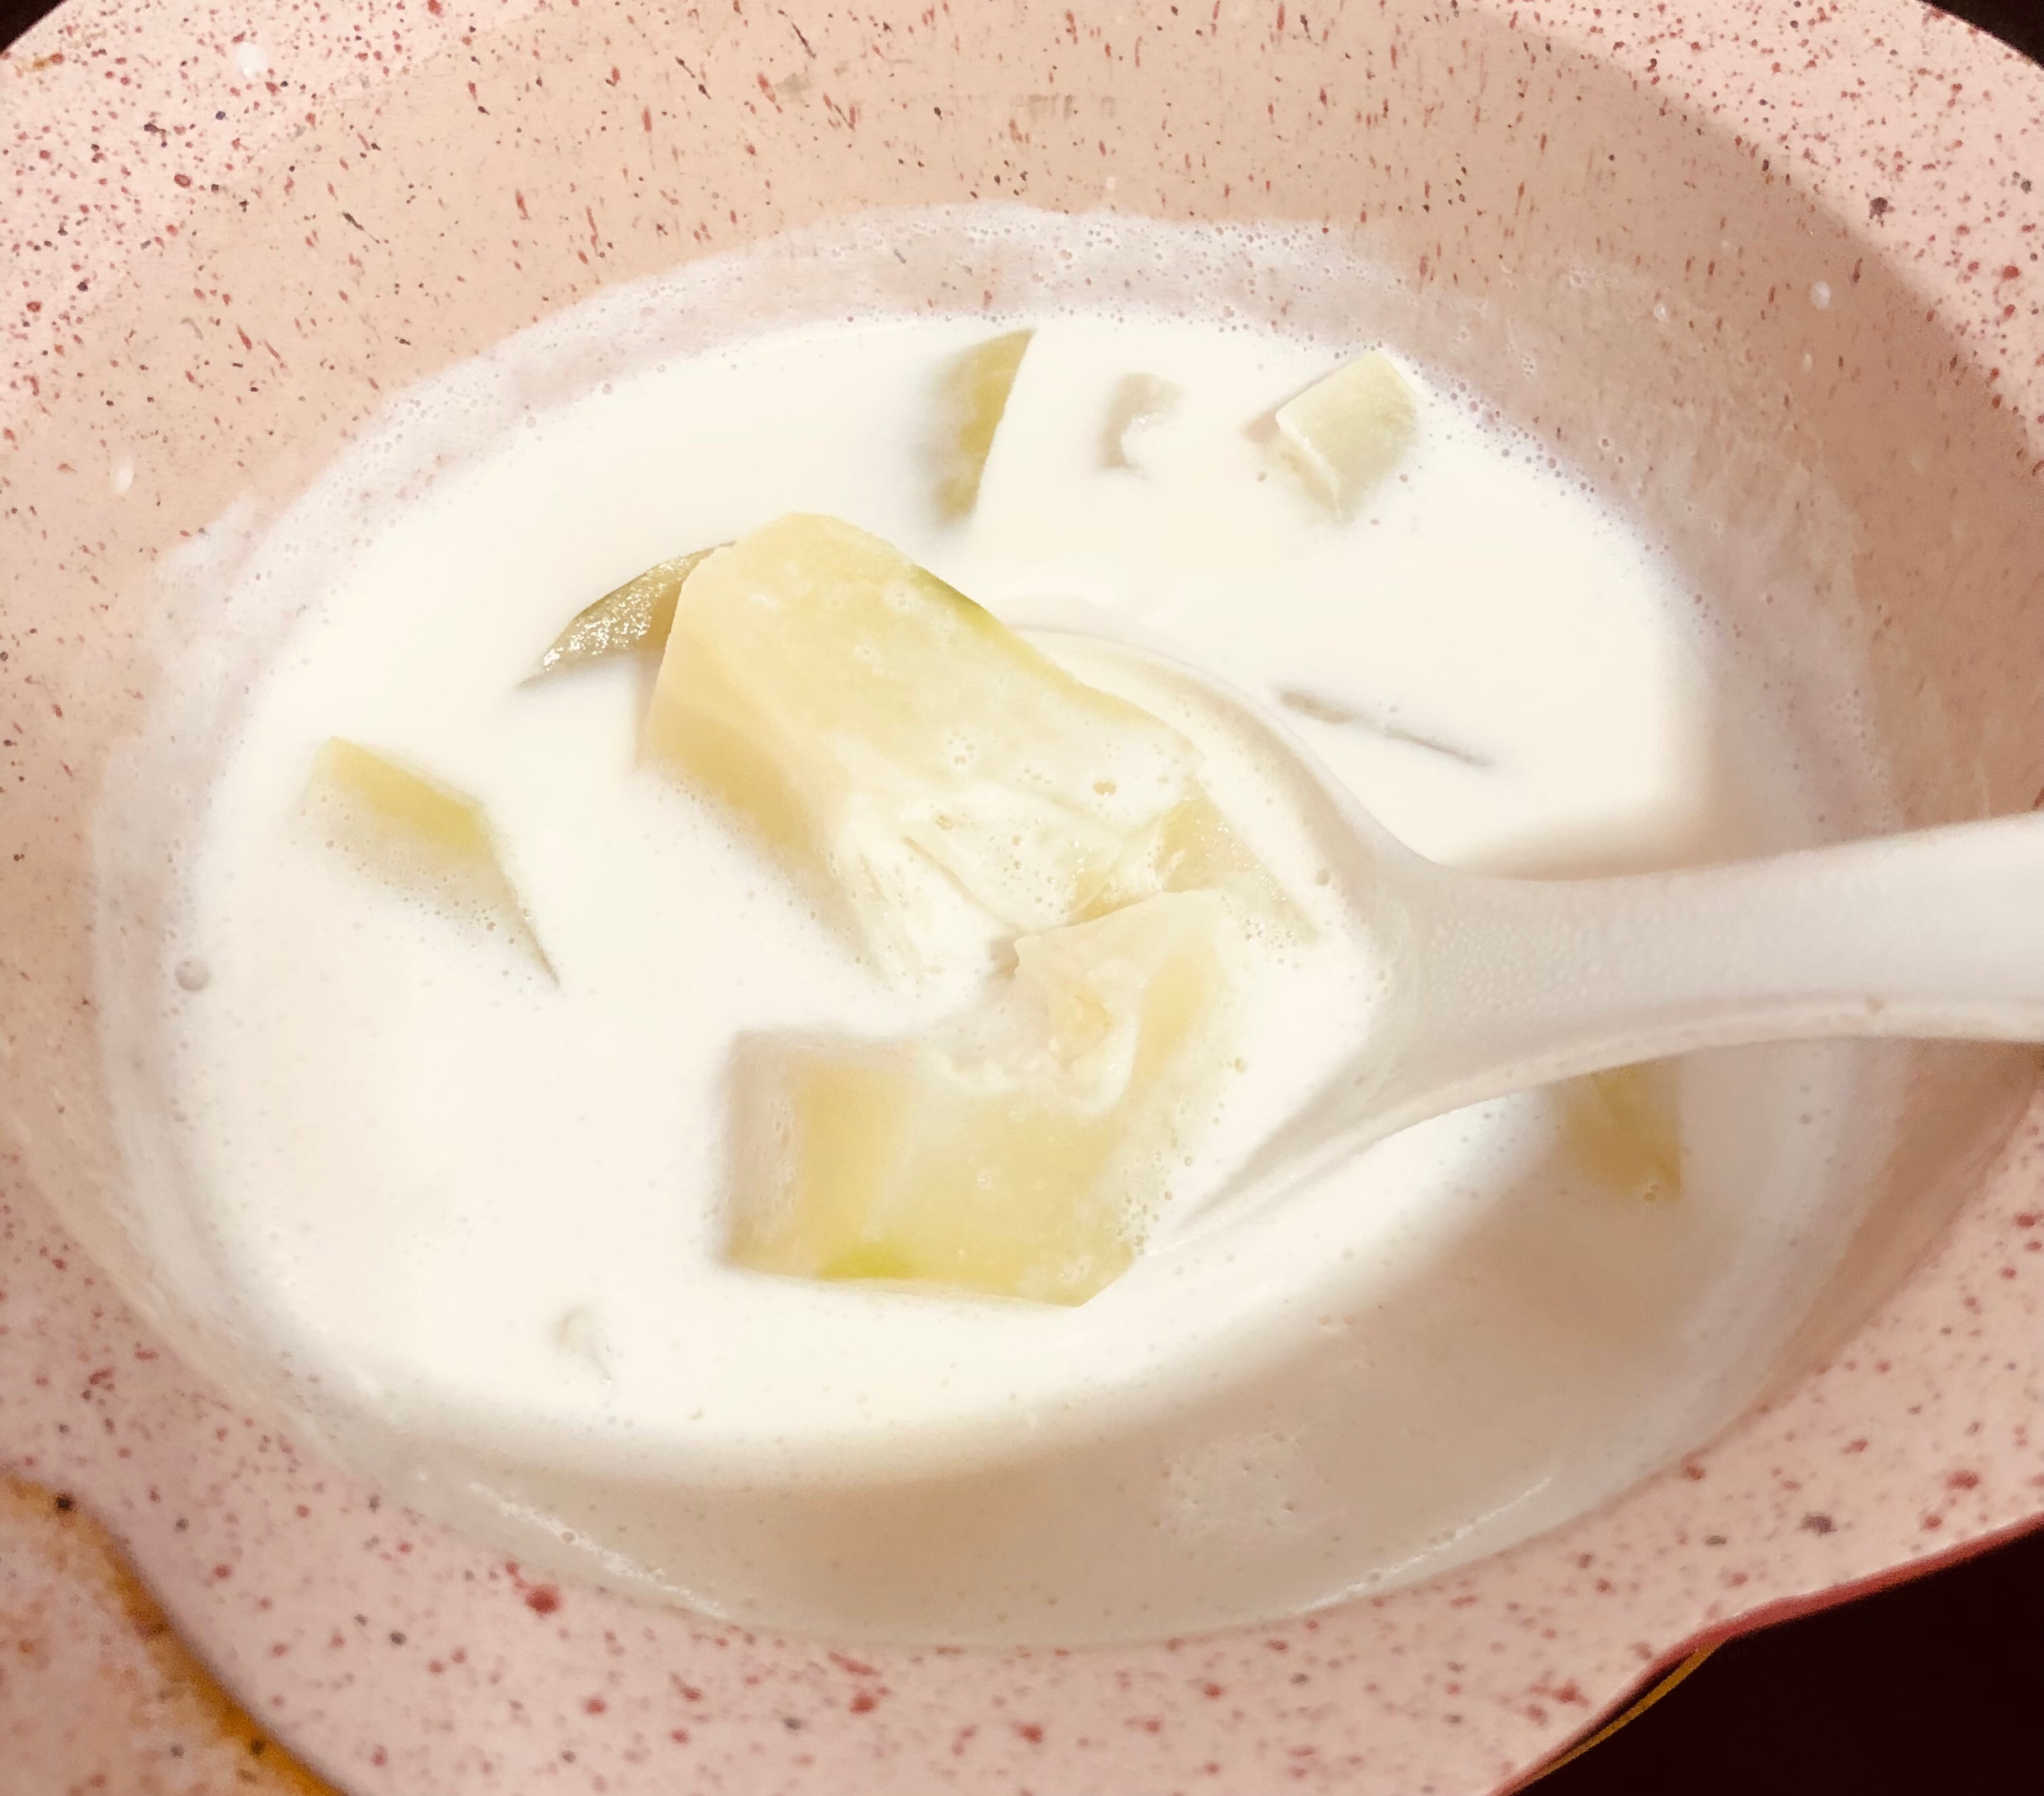 补虚损生津润肠平肝和胃舒筋活骨的木瓜炖牛奶的做法